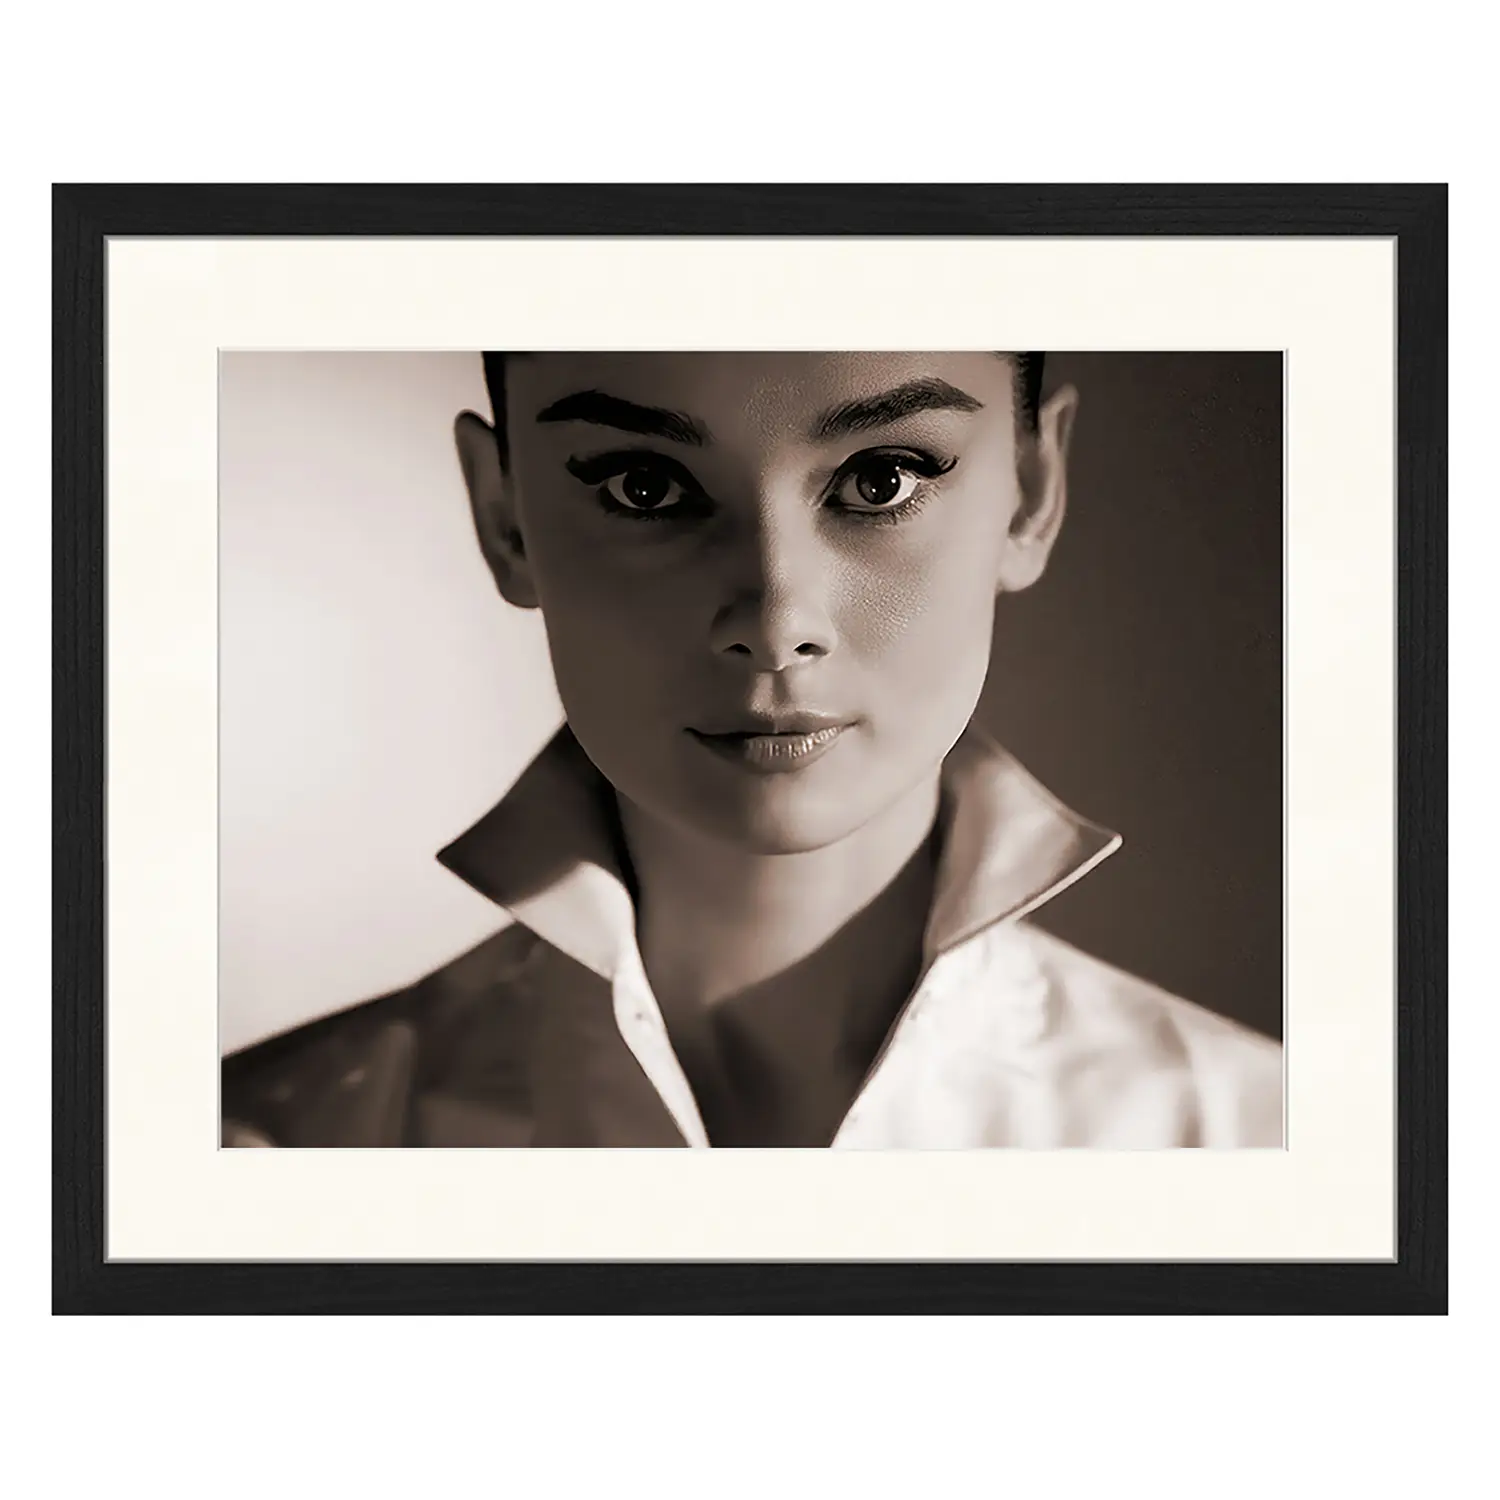 Bild Audrey Hepburn